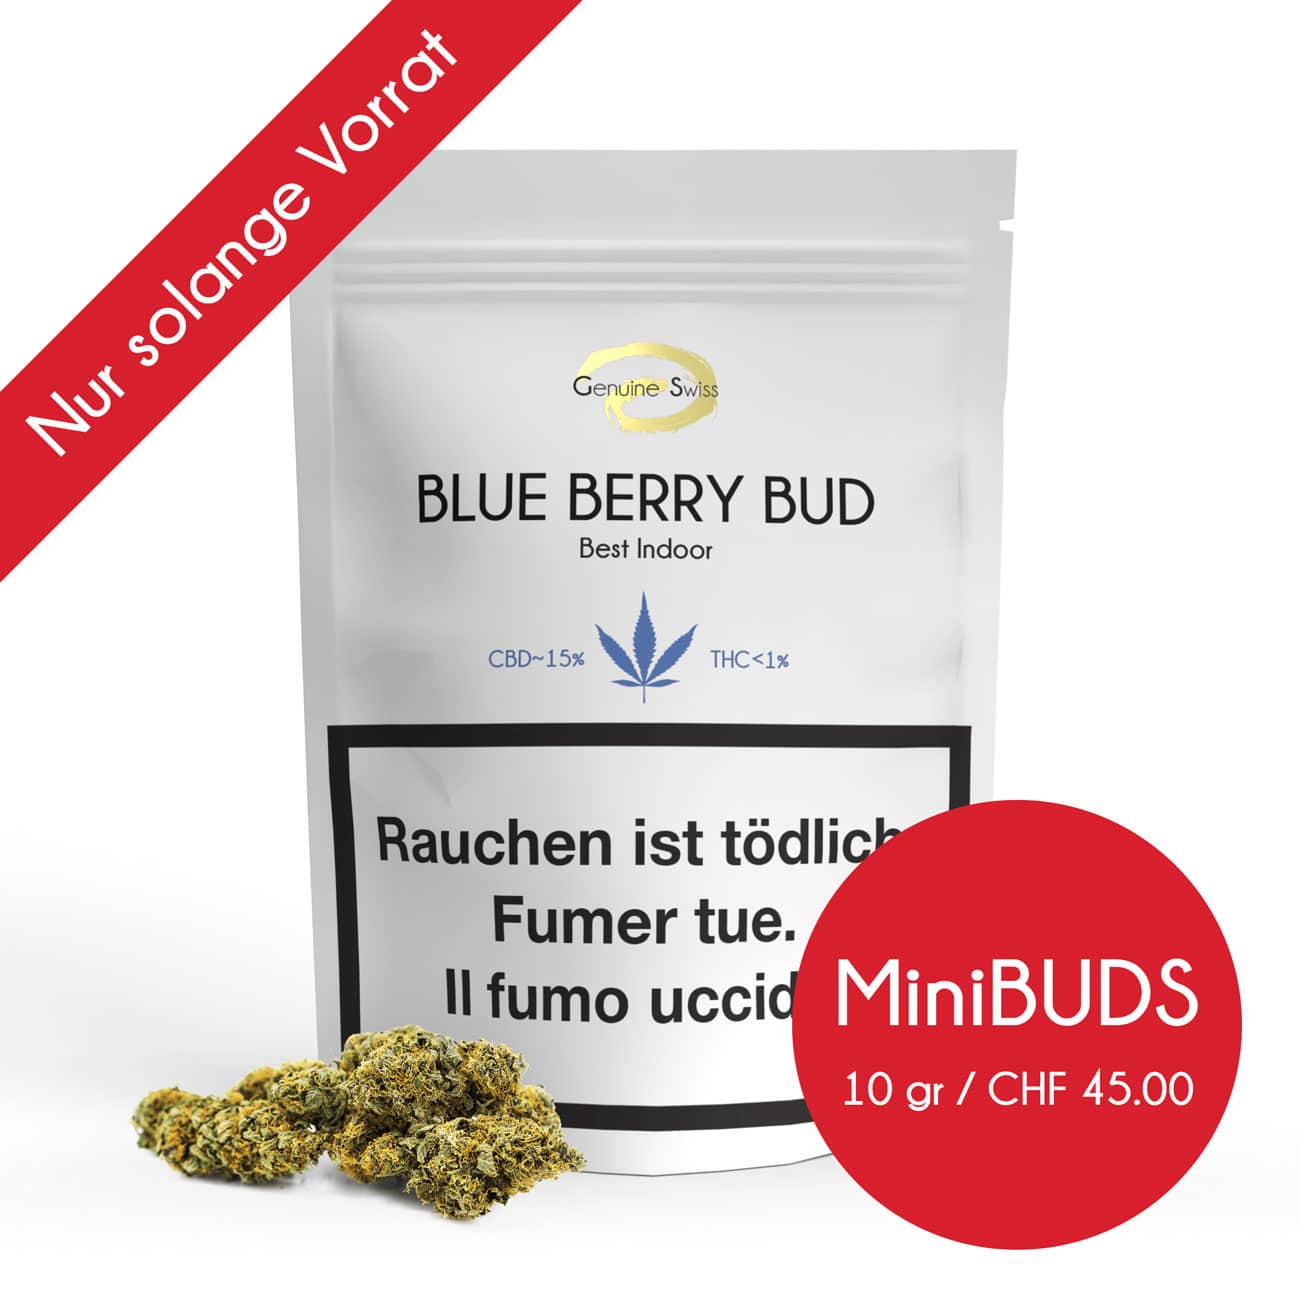 Genuine Swiss Blue Berry Minibuds, Genuine Swiss